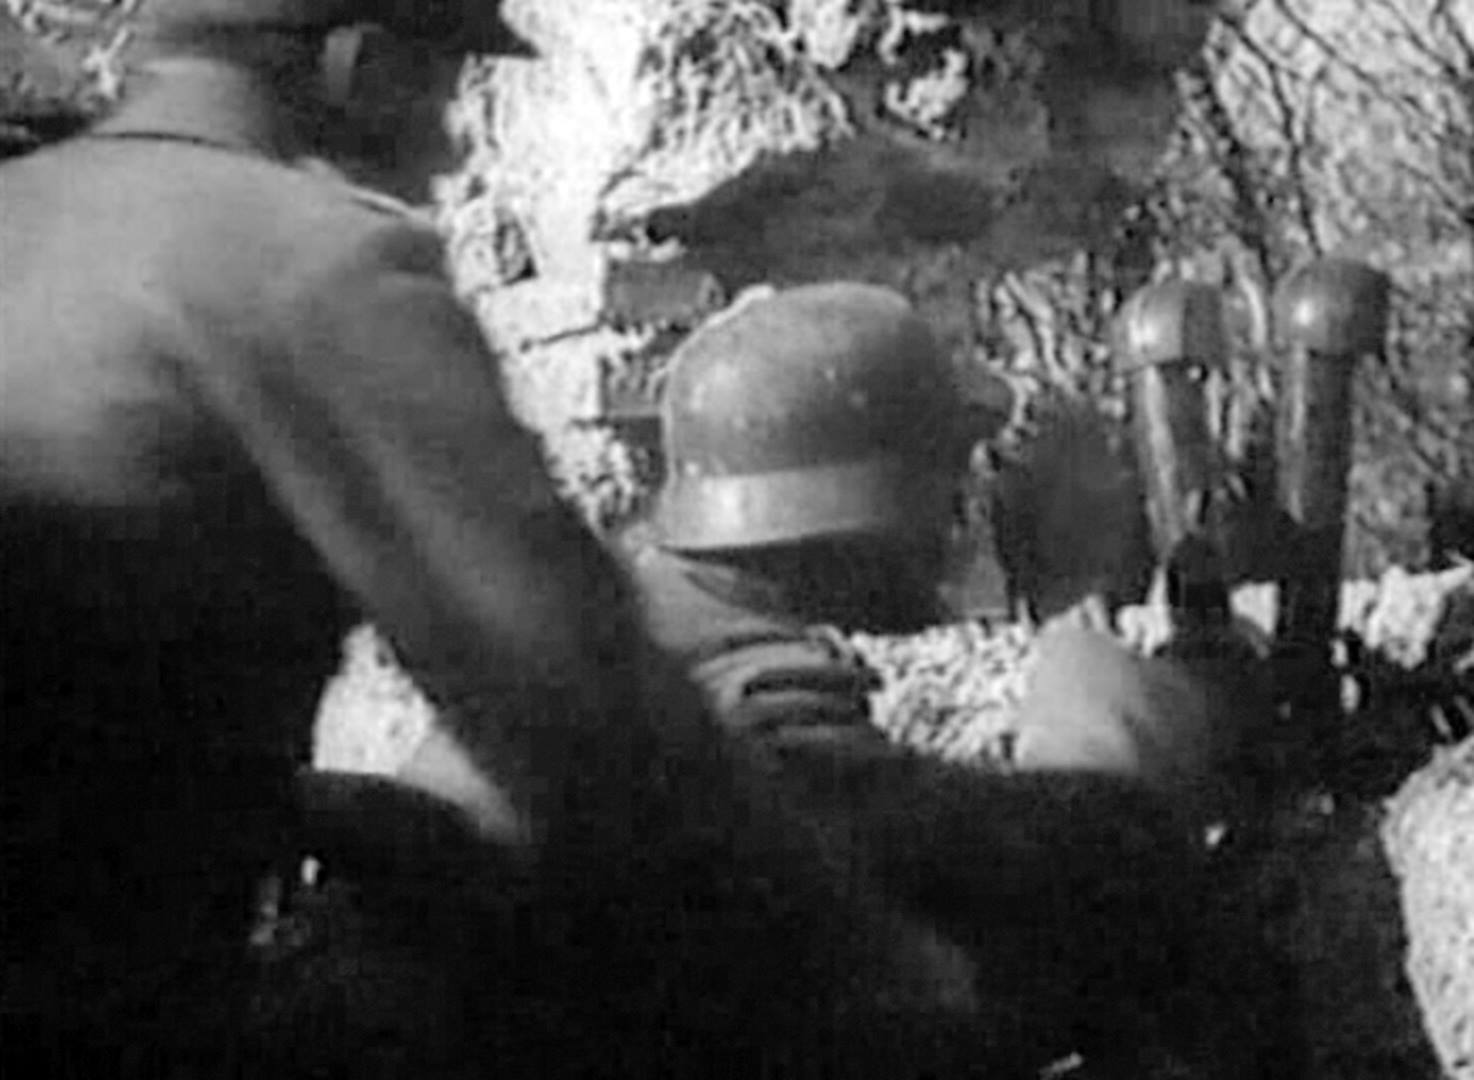 <p>1944, posto di osservazione tedesco all’interno delle mura della Masseria Albaneta. Frame tratto da un cinegiornale tedesco. (Cortesia del Sig. Mauro Lottici)</p>